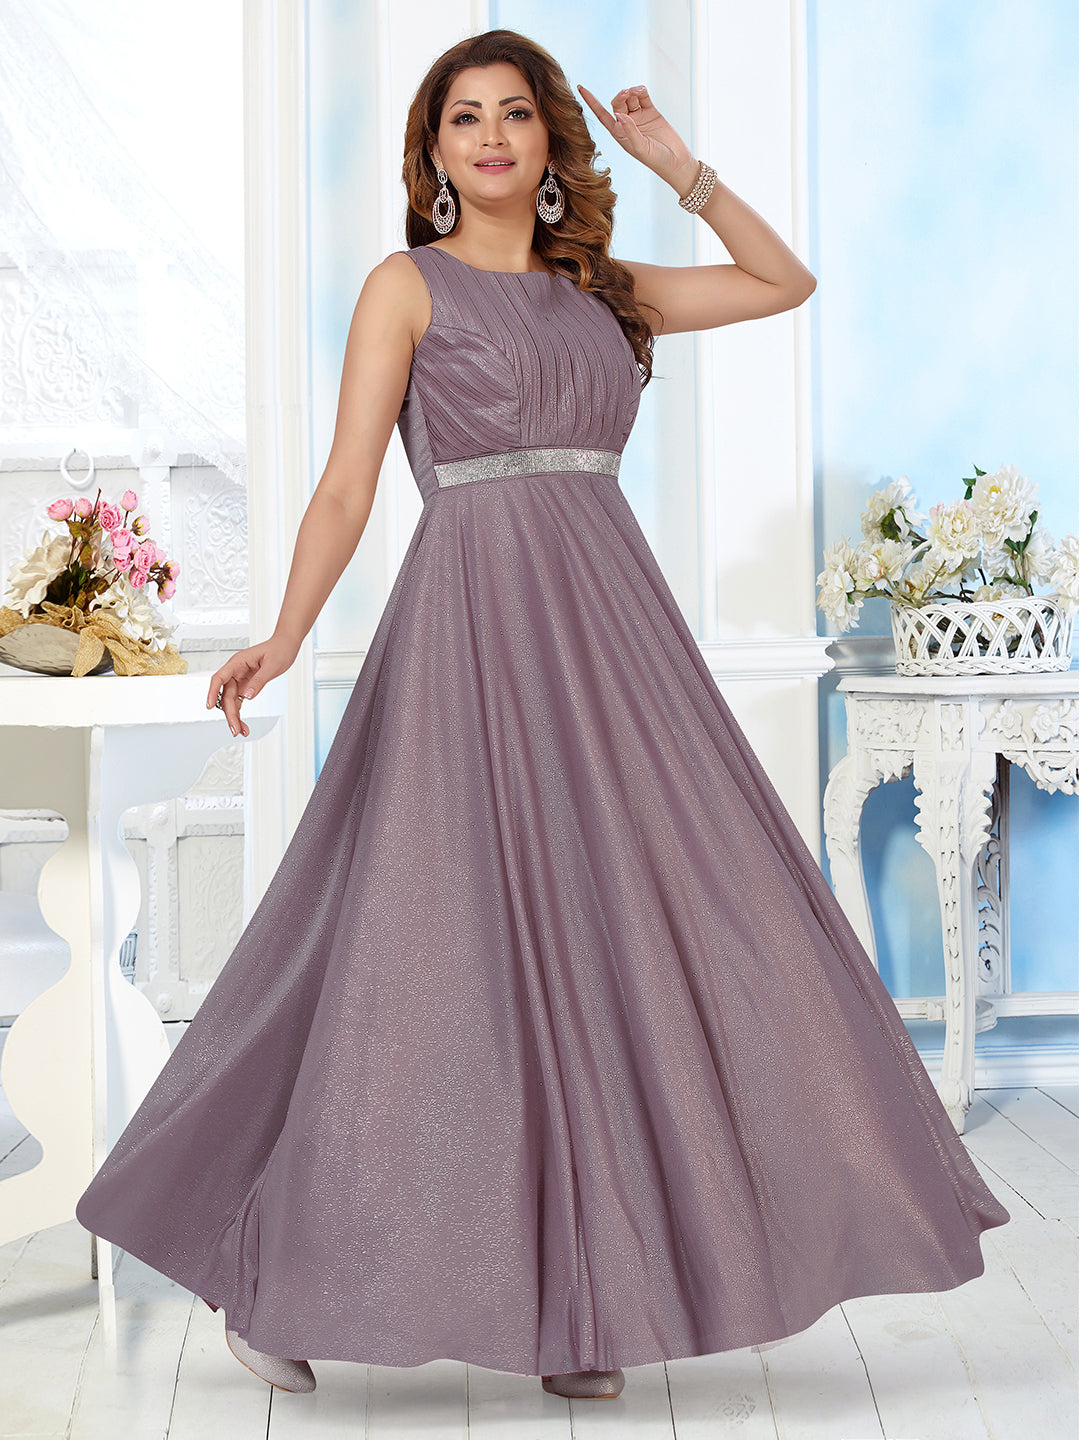 Women Dress Party Evening Purple | Women Purple Dresses Weddings - Party  Dress Women - Aliexpress